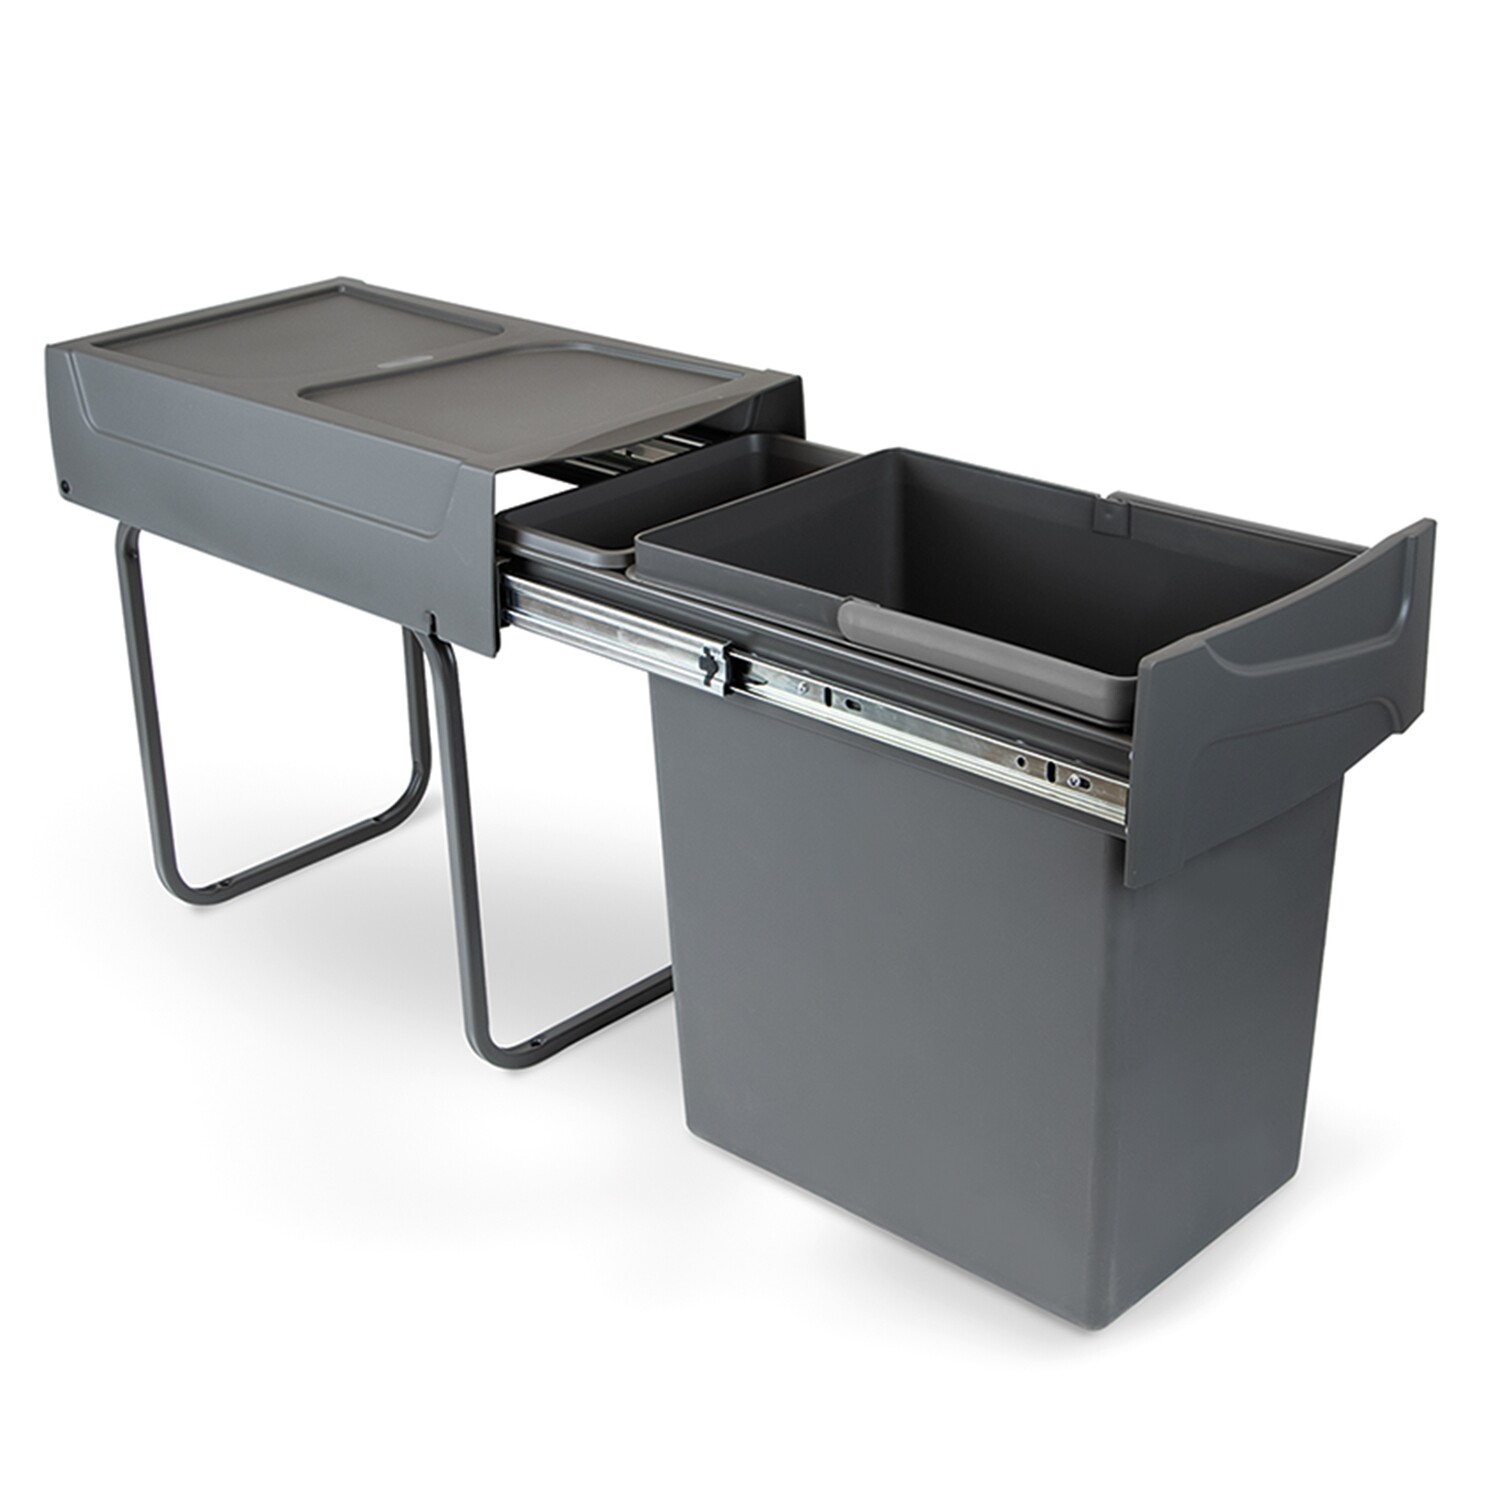 Emuca 20L Recyclingbehälter für Küche, Unterseitigbefeistigung, manuelle Extraktion, Stahl und Kunststoff, Anthrazitgrau.